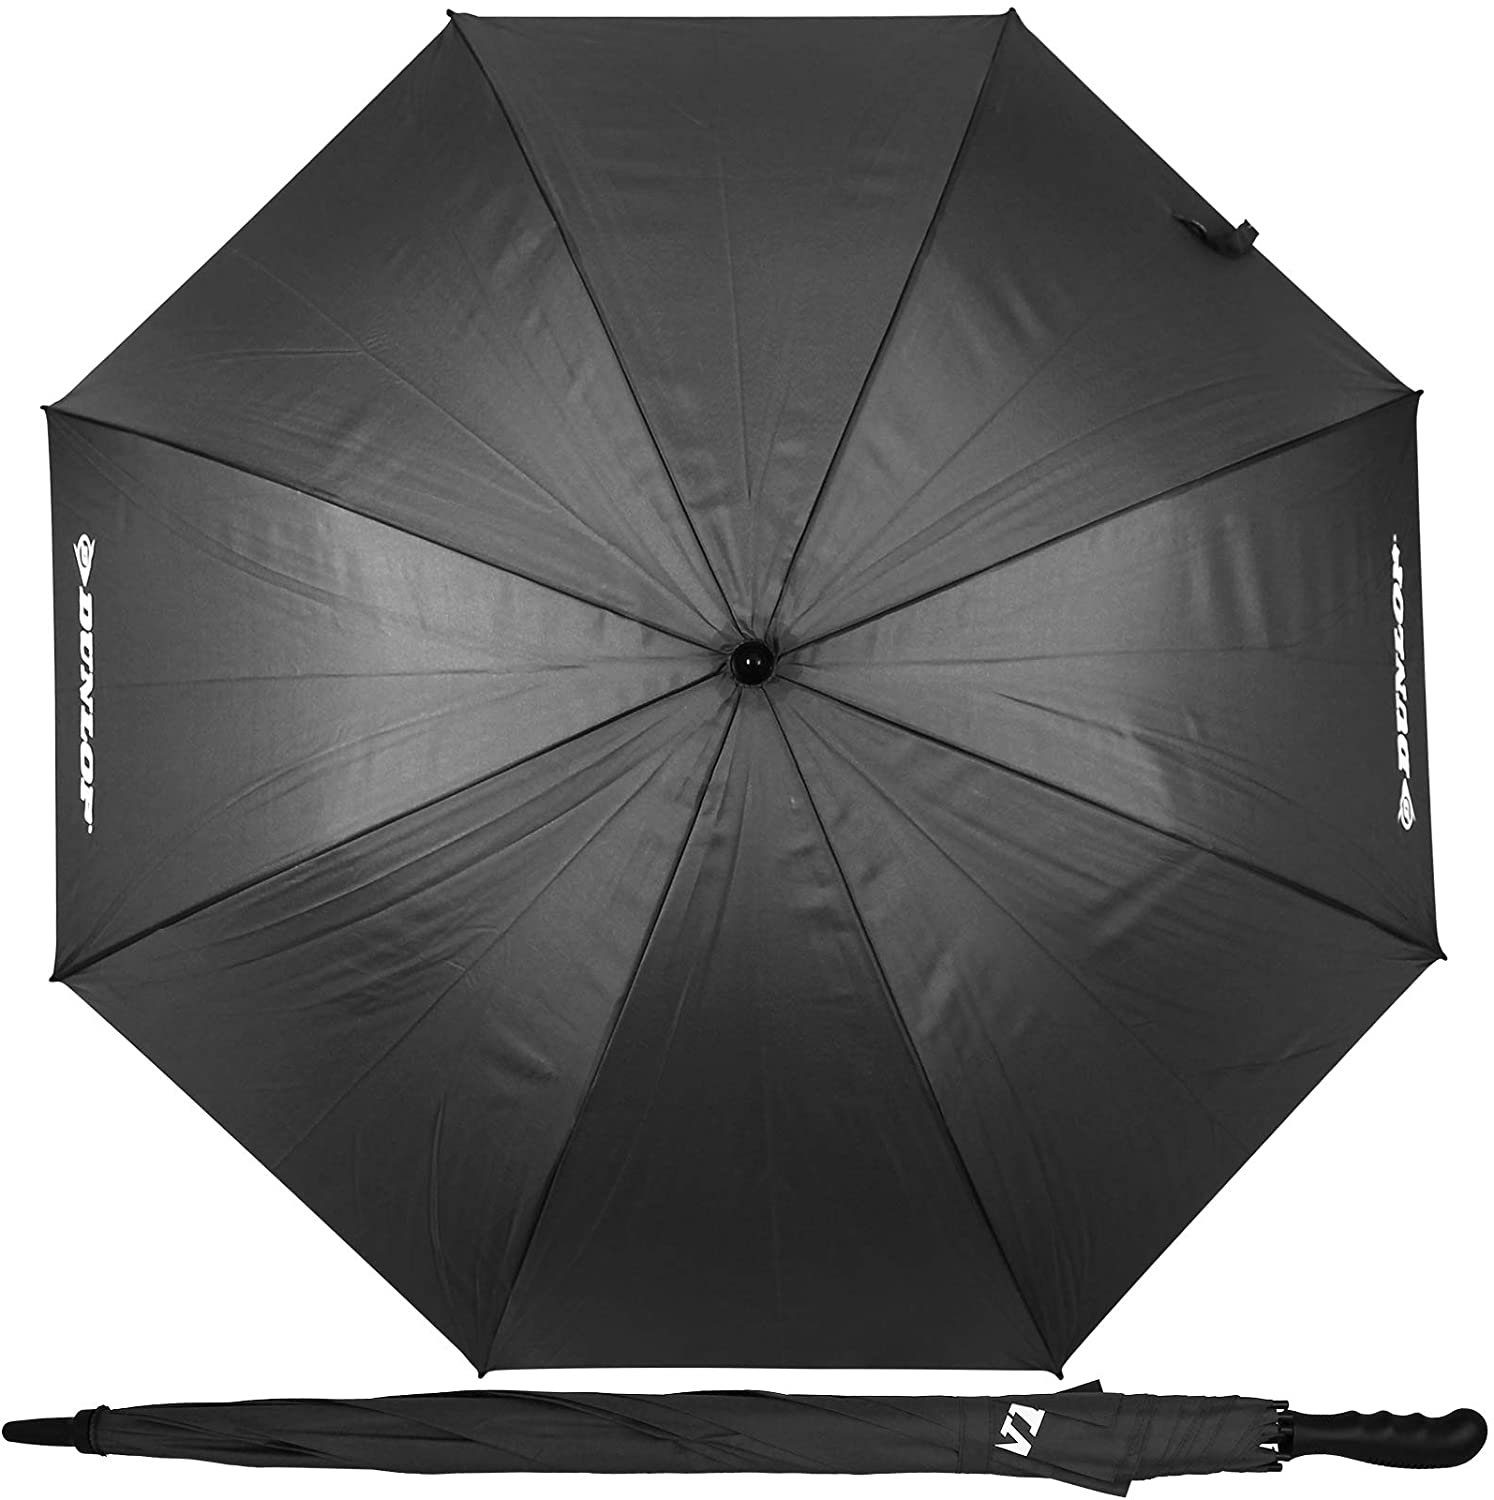 Dokado Partnerschirm XXL Paar Regenschirm 130cm mit Farbwahl Partnerschirm für 2 Personen Stockschirm Familienschirm Doppelregenschirm Dunlop grau